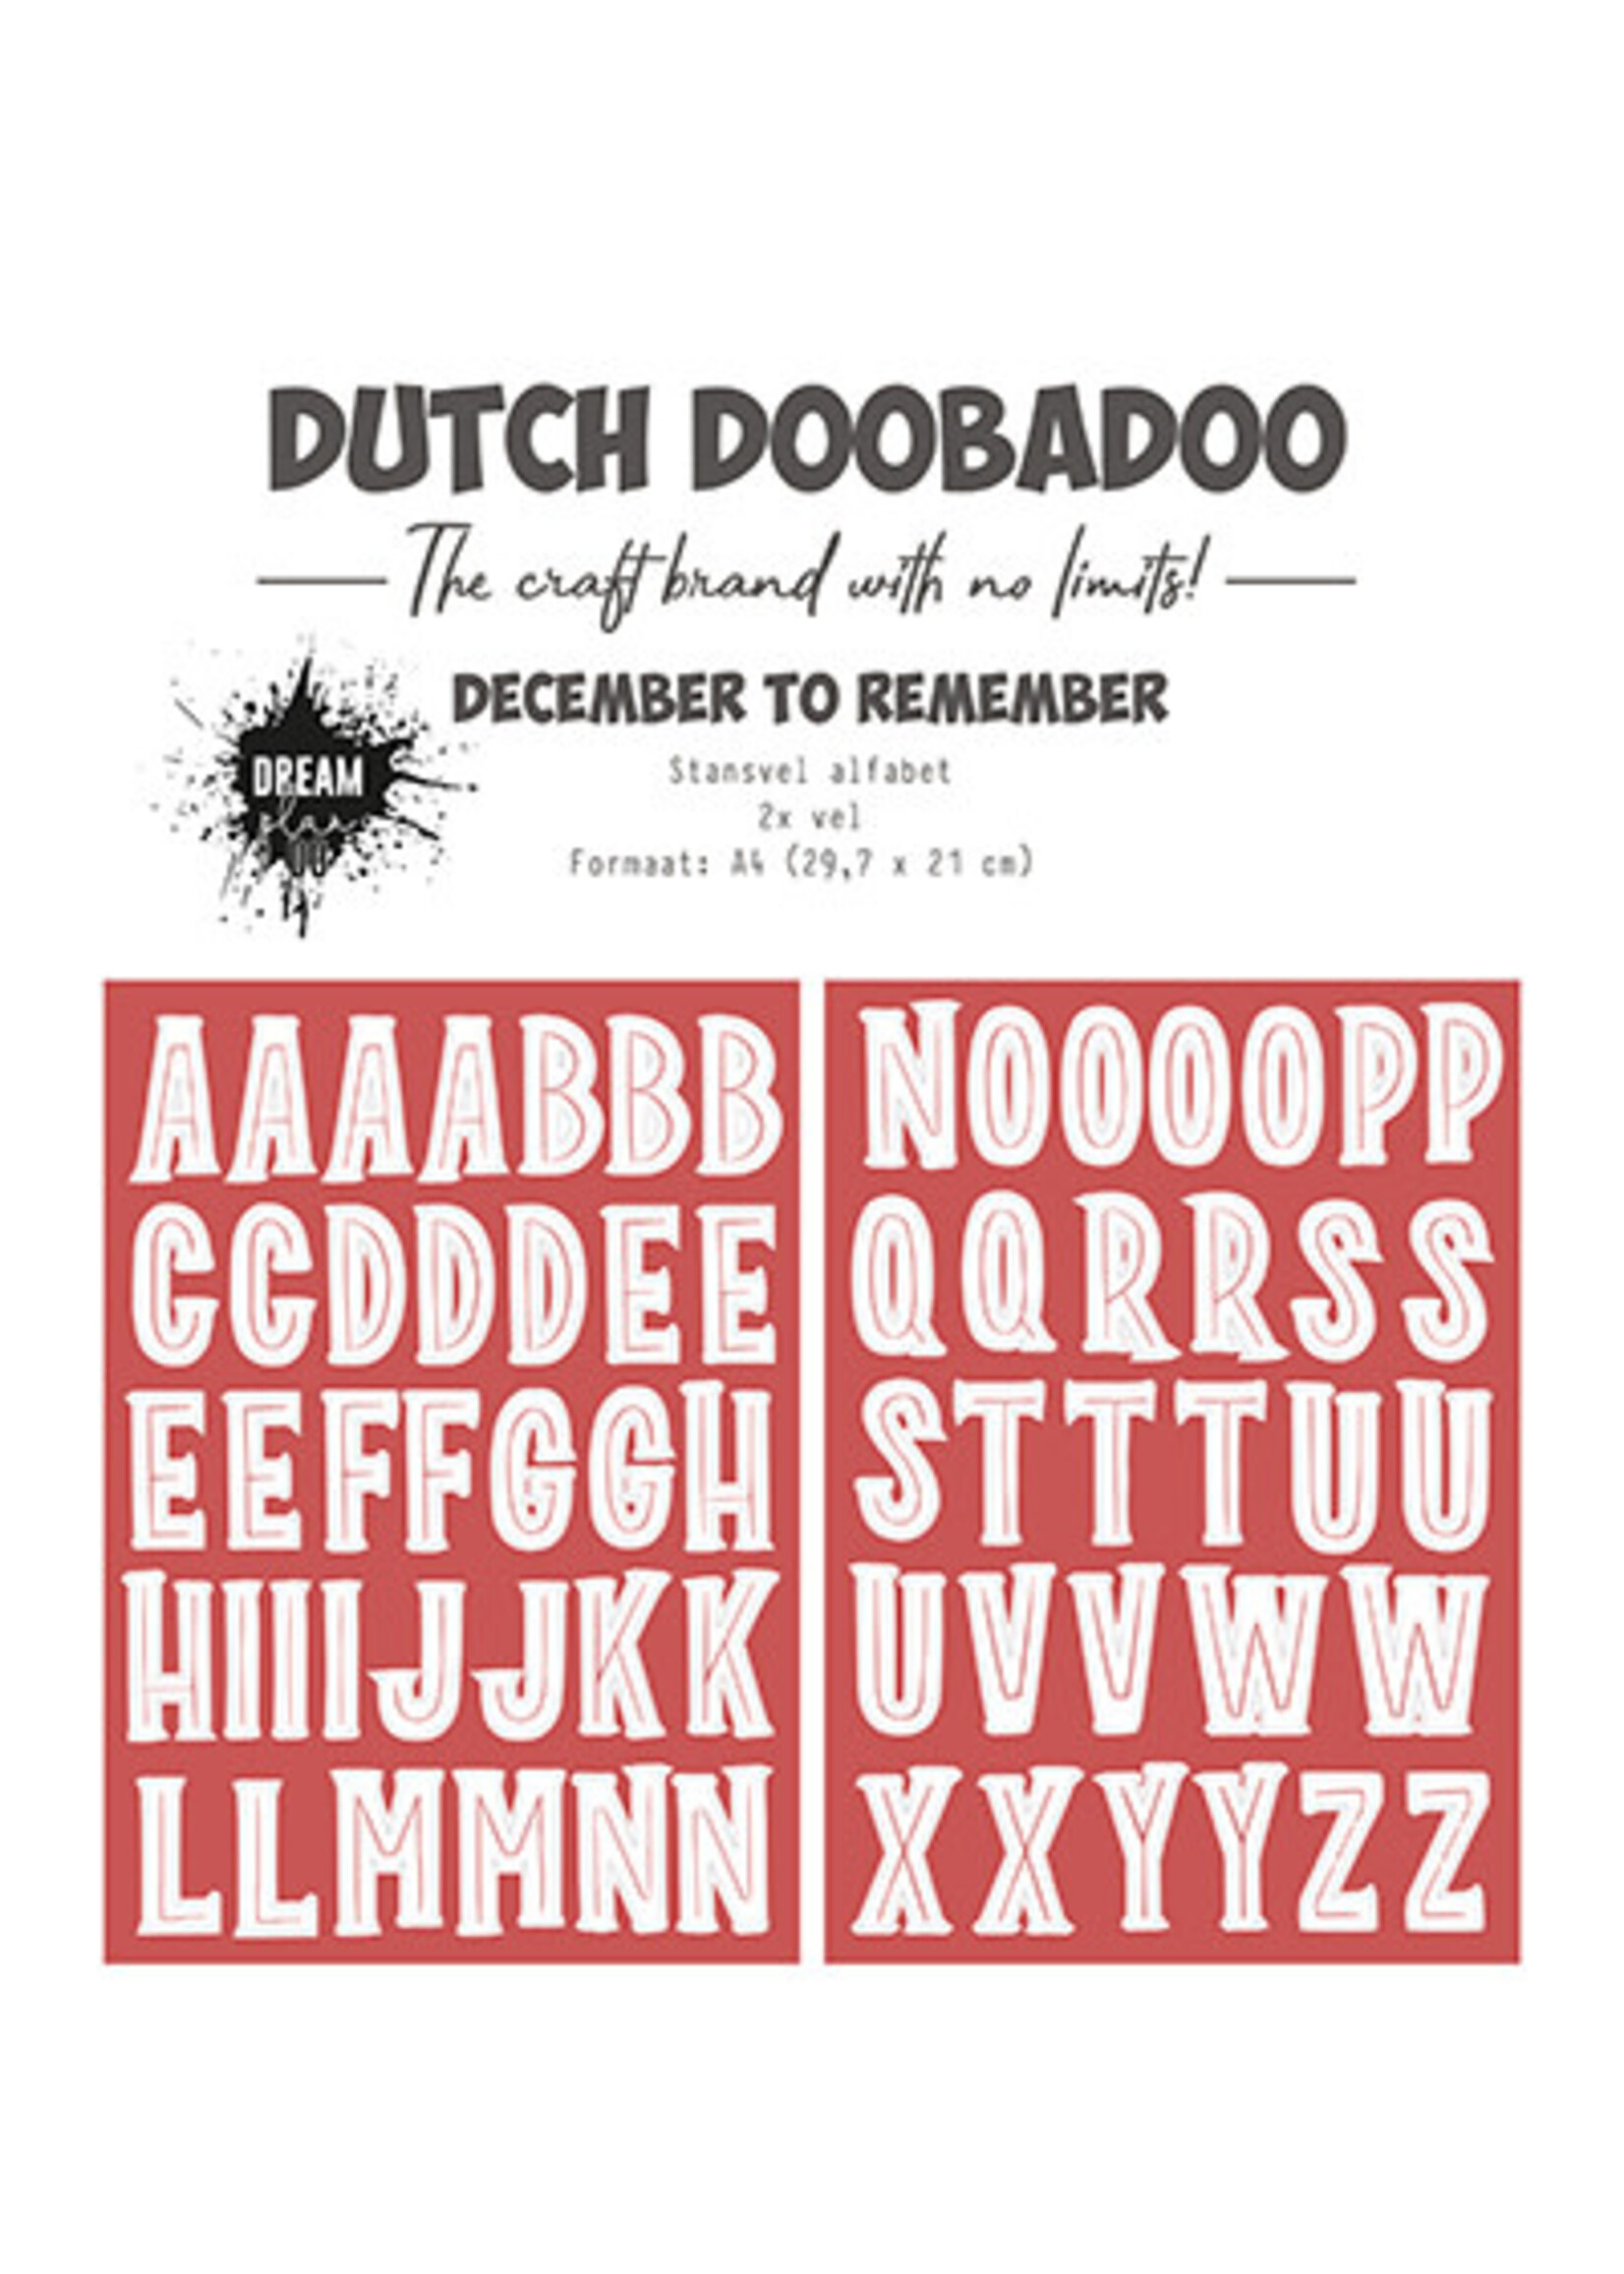 Dutch Doobadoo 474.007.020 - Stansvel Alfabet to Remember